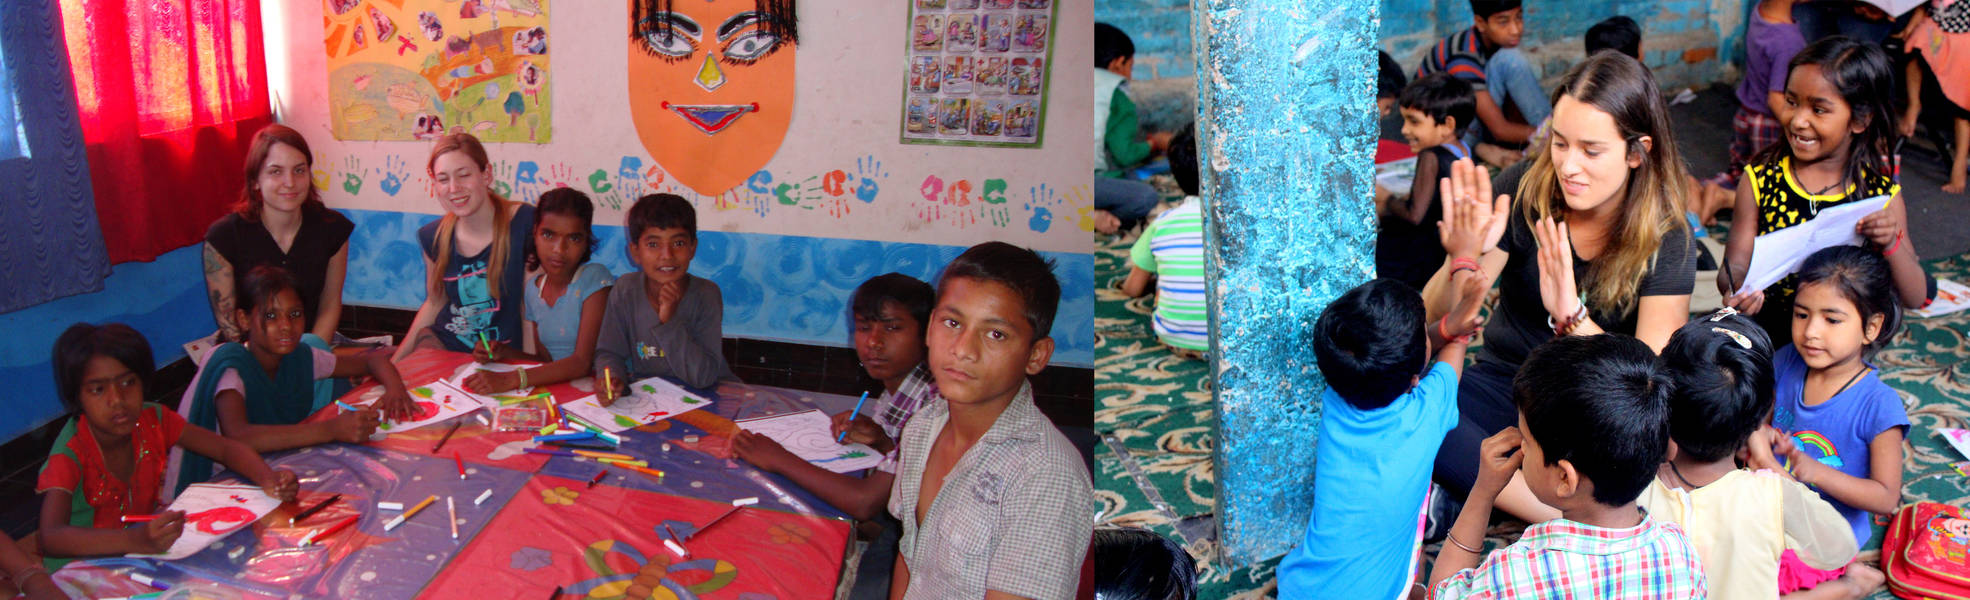 Volunteer work in the street children project in Delhi